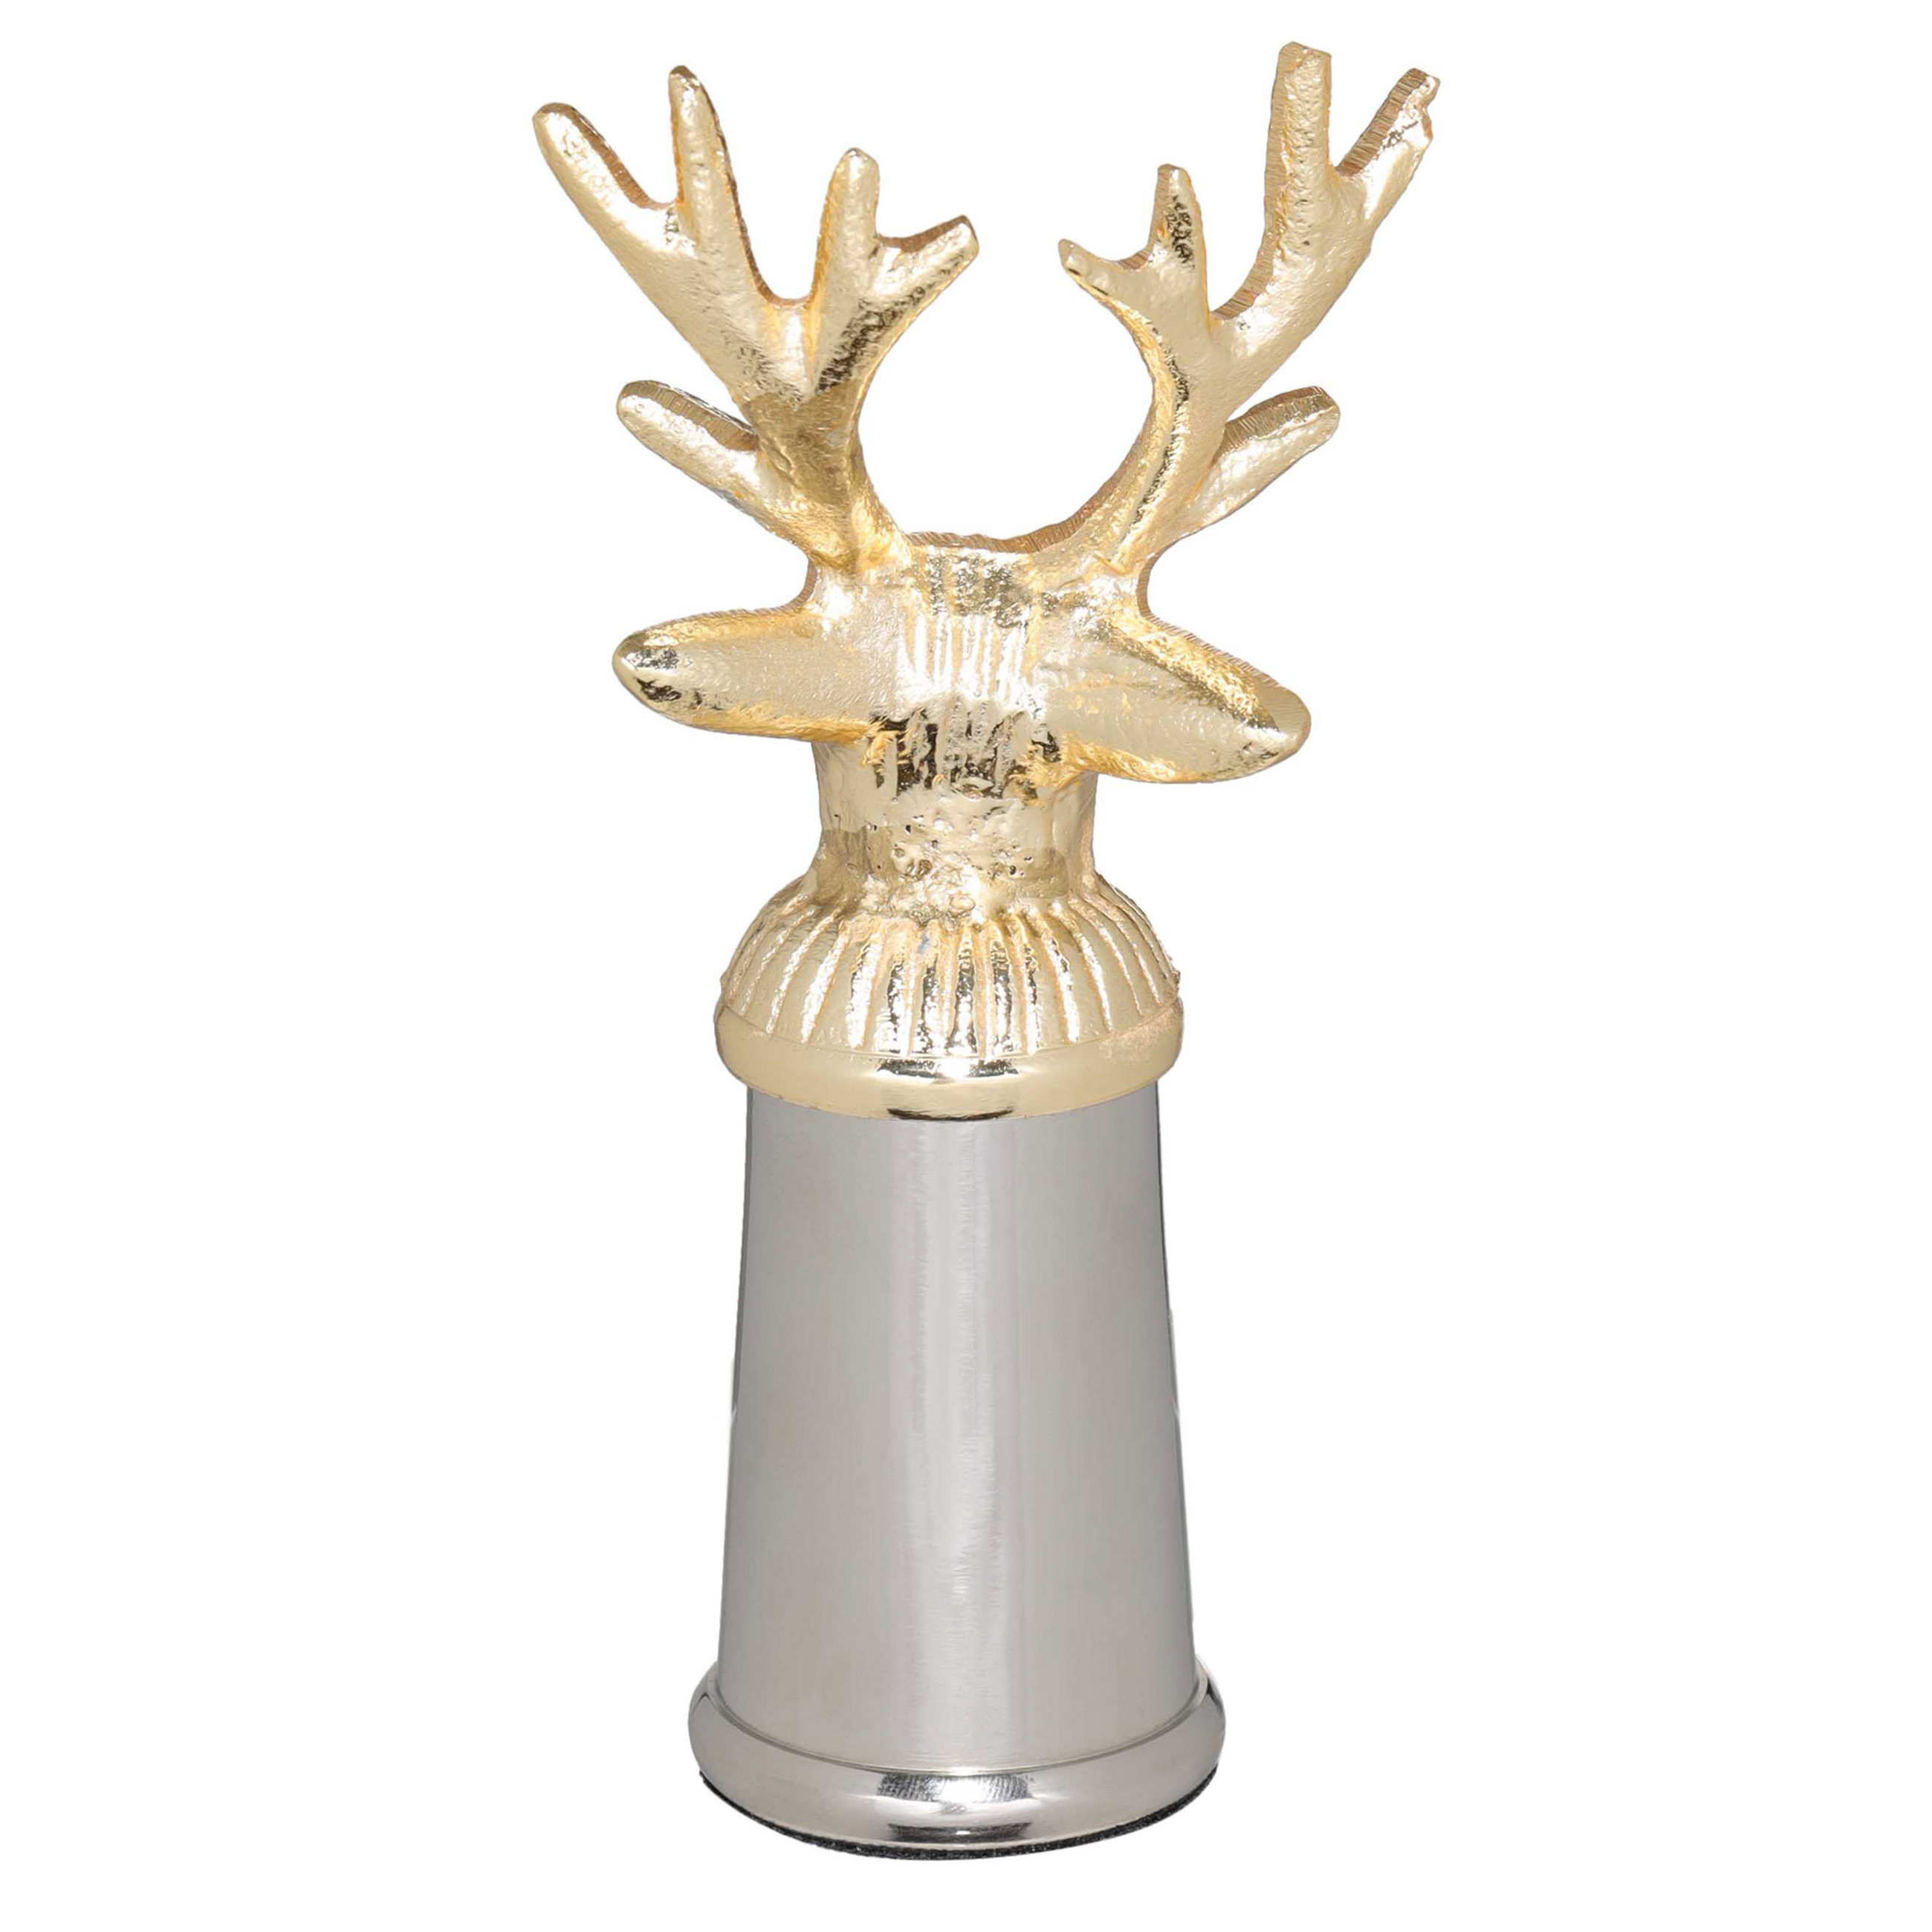 Емкость для соли или перца, 14 см, металл, серебристо-золотистая, Олень, Arctic deer изображение № 3